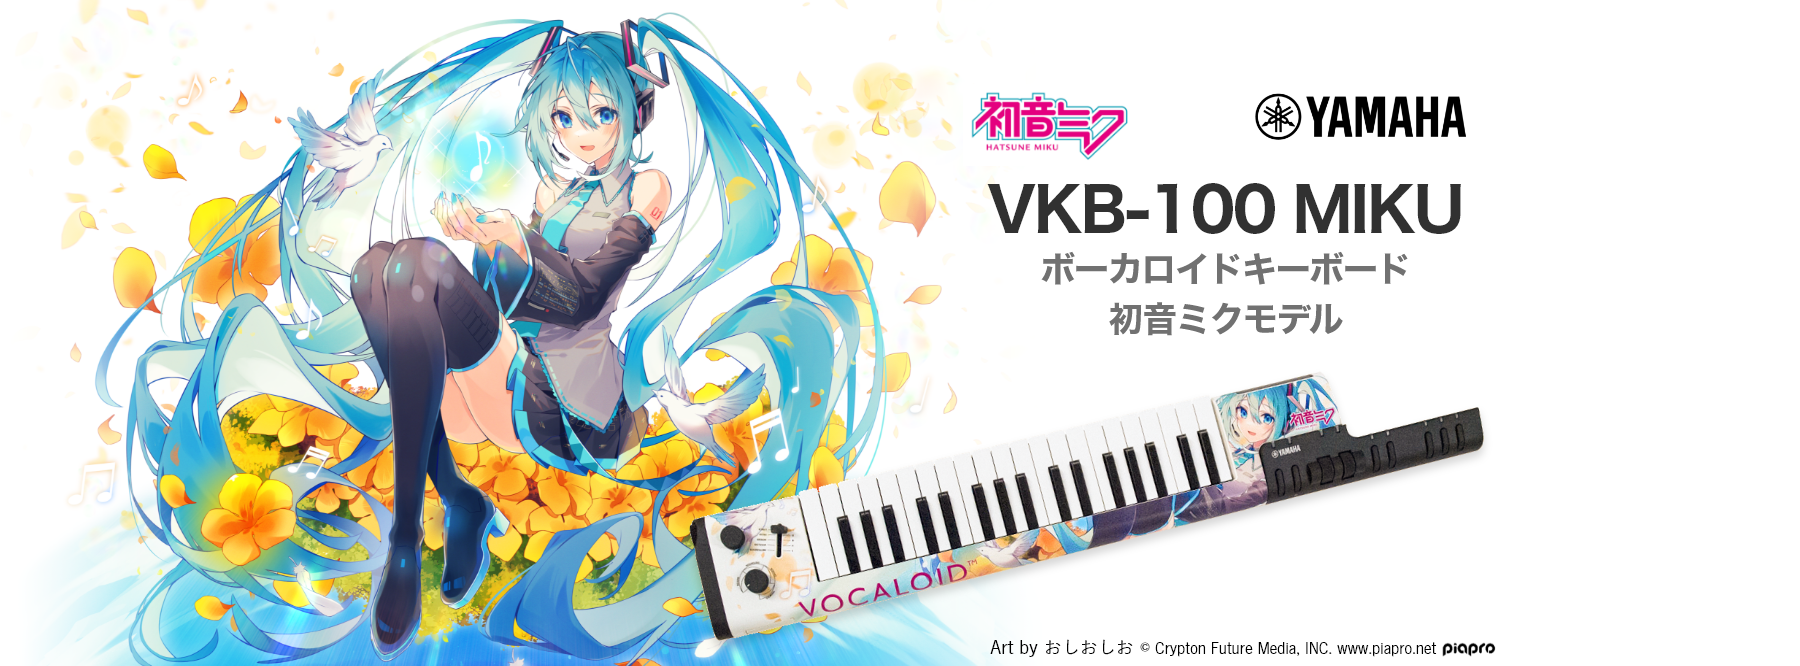 *〈新商品〉ボーカロイドキーボード【VKB-100 MIKU】期間限定・受注販売開始しております！！ YAMAHAが発売したVOCALOIDエンジンを搭載し、鍵盤でリアルタイムに VOCALOIDに歌詞を歌わせることができるボーカロイドキーボードに、初音ミクモデル「VOCALOID Keyboard […]